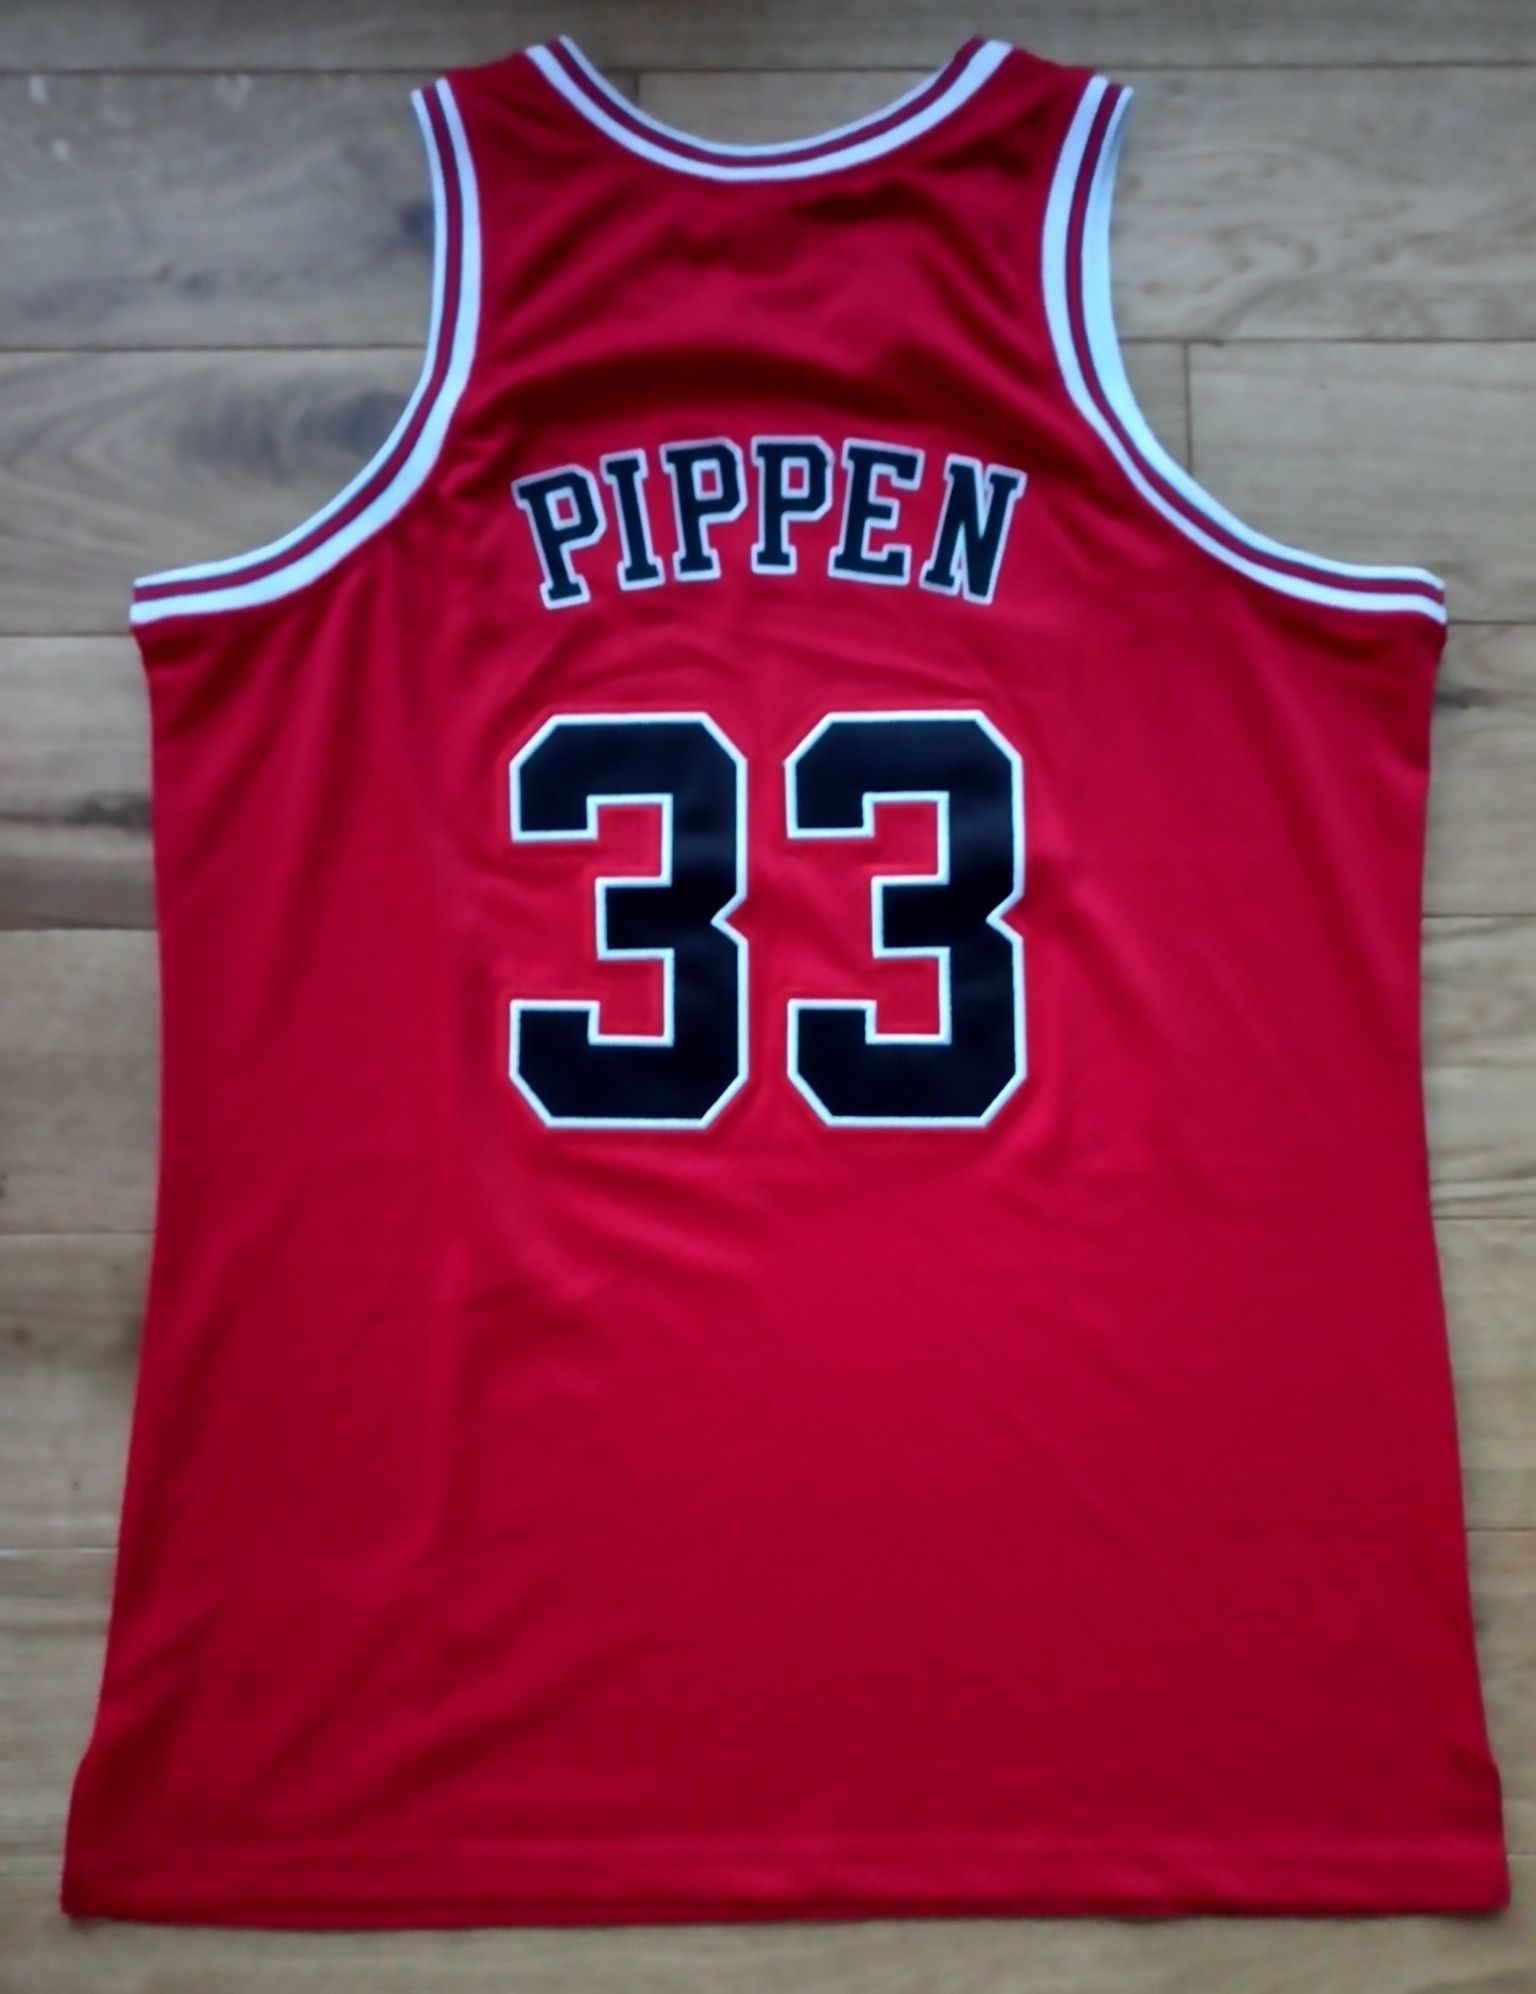 Scottie Pippen Chicago Bulla koszulka koszykarska NBA retro